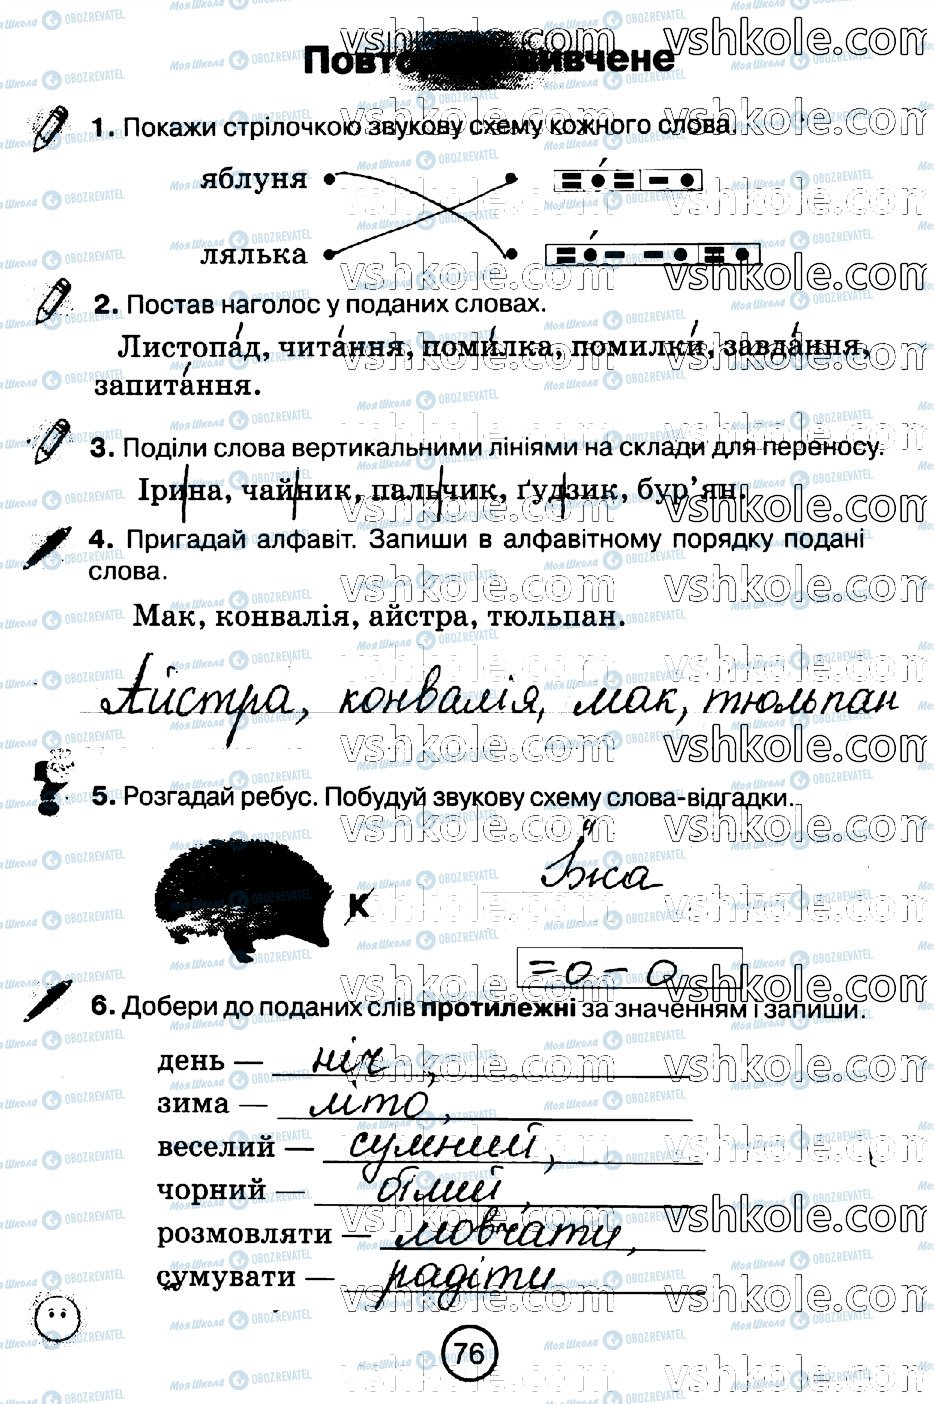 ГДЗ Укр мова 2 класс страница стр76